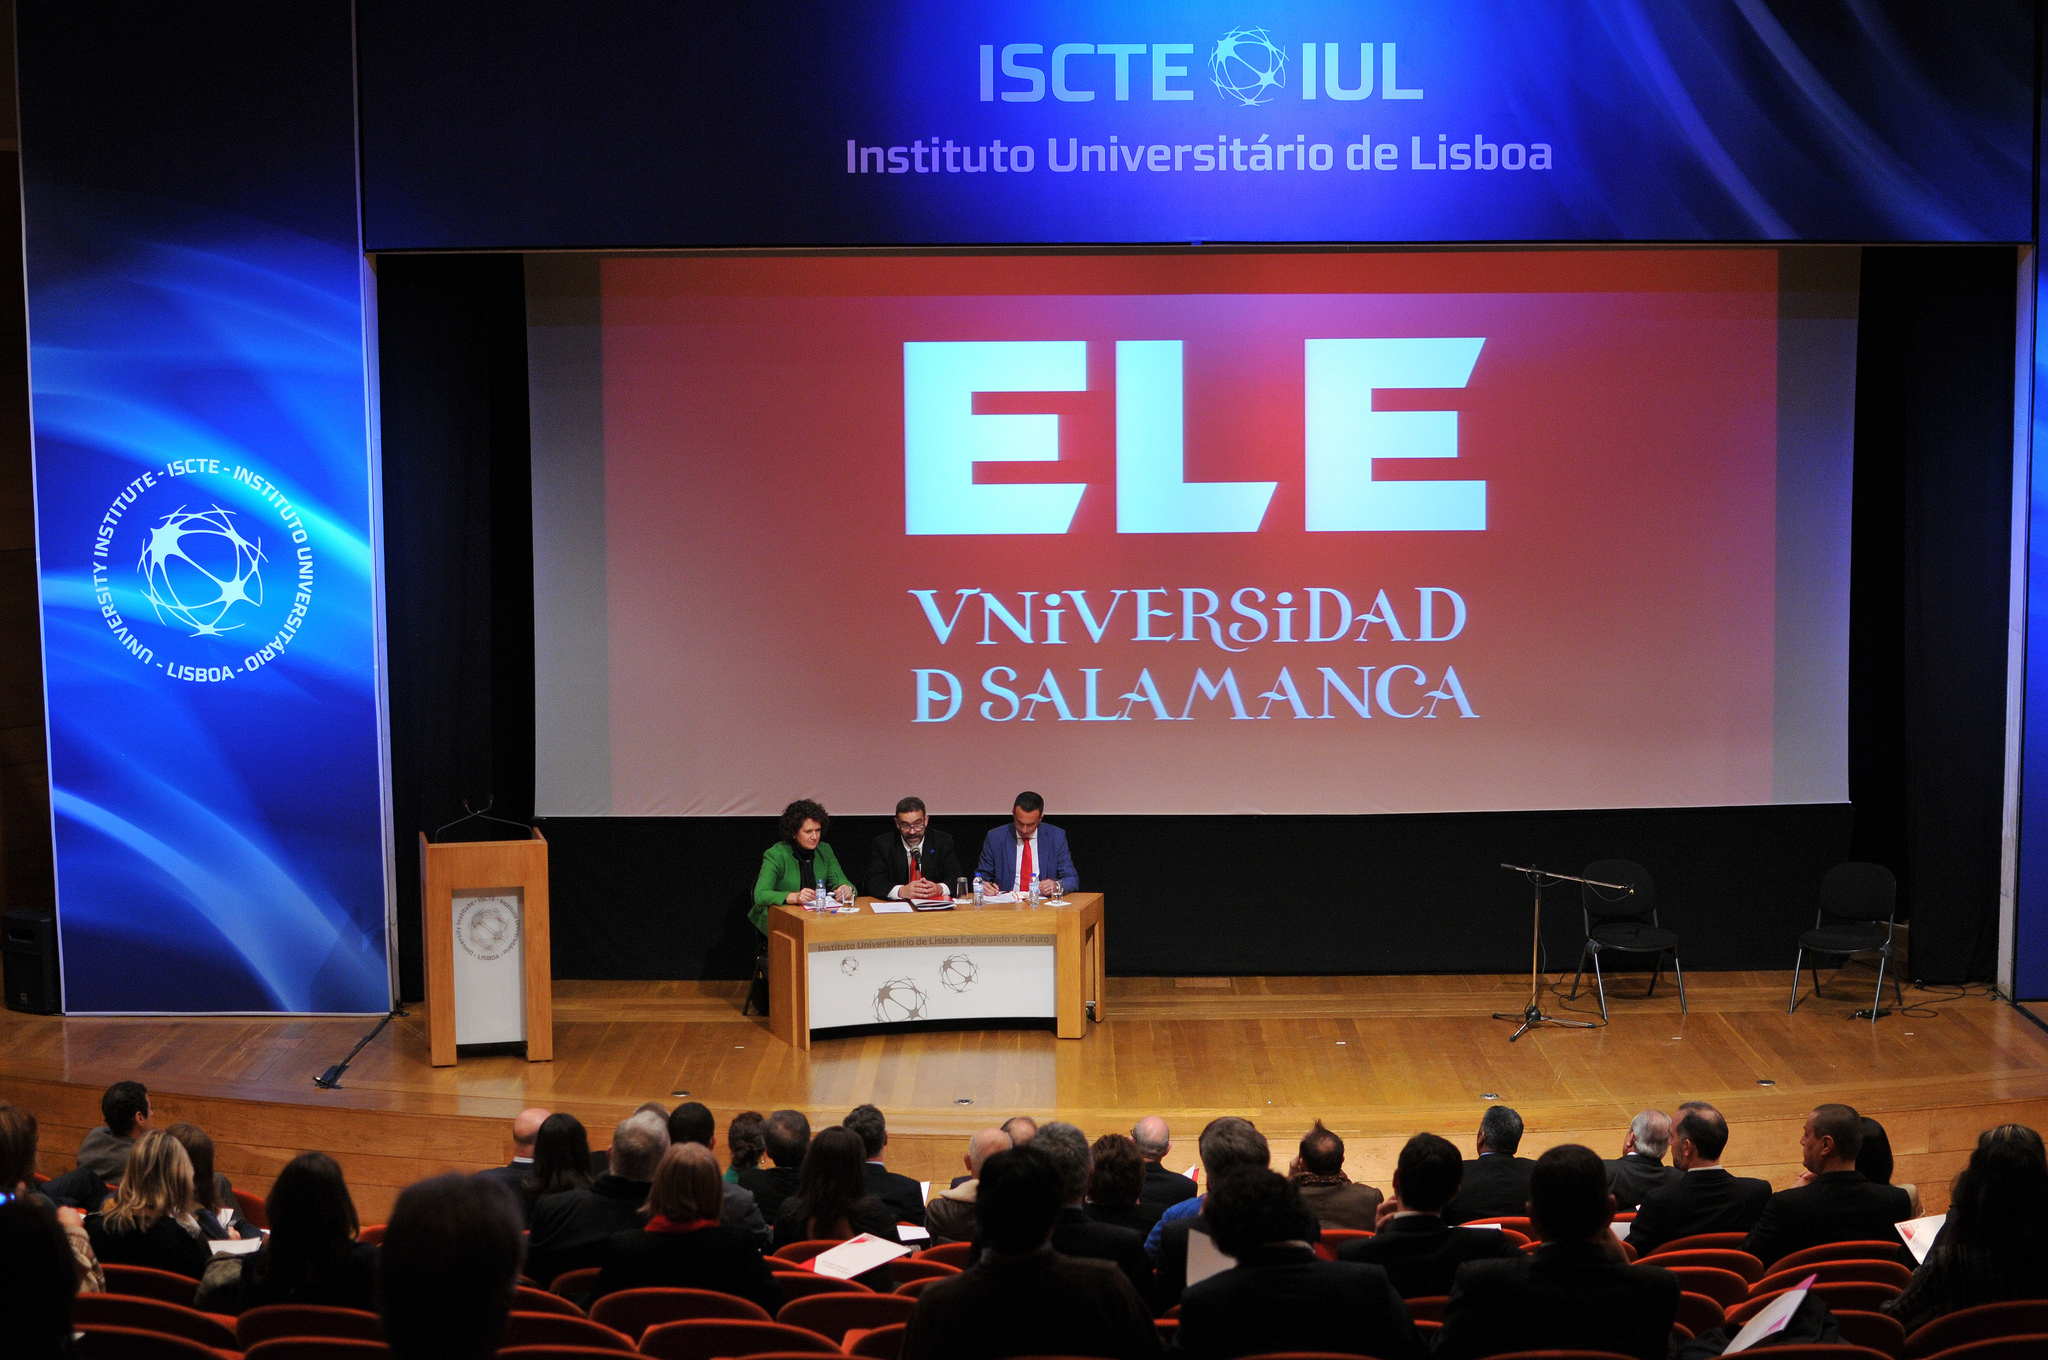 La Escuela de Lengua Española de la Universidad de Salamanca en Lisboa comienza su actividad